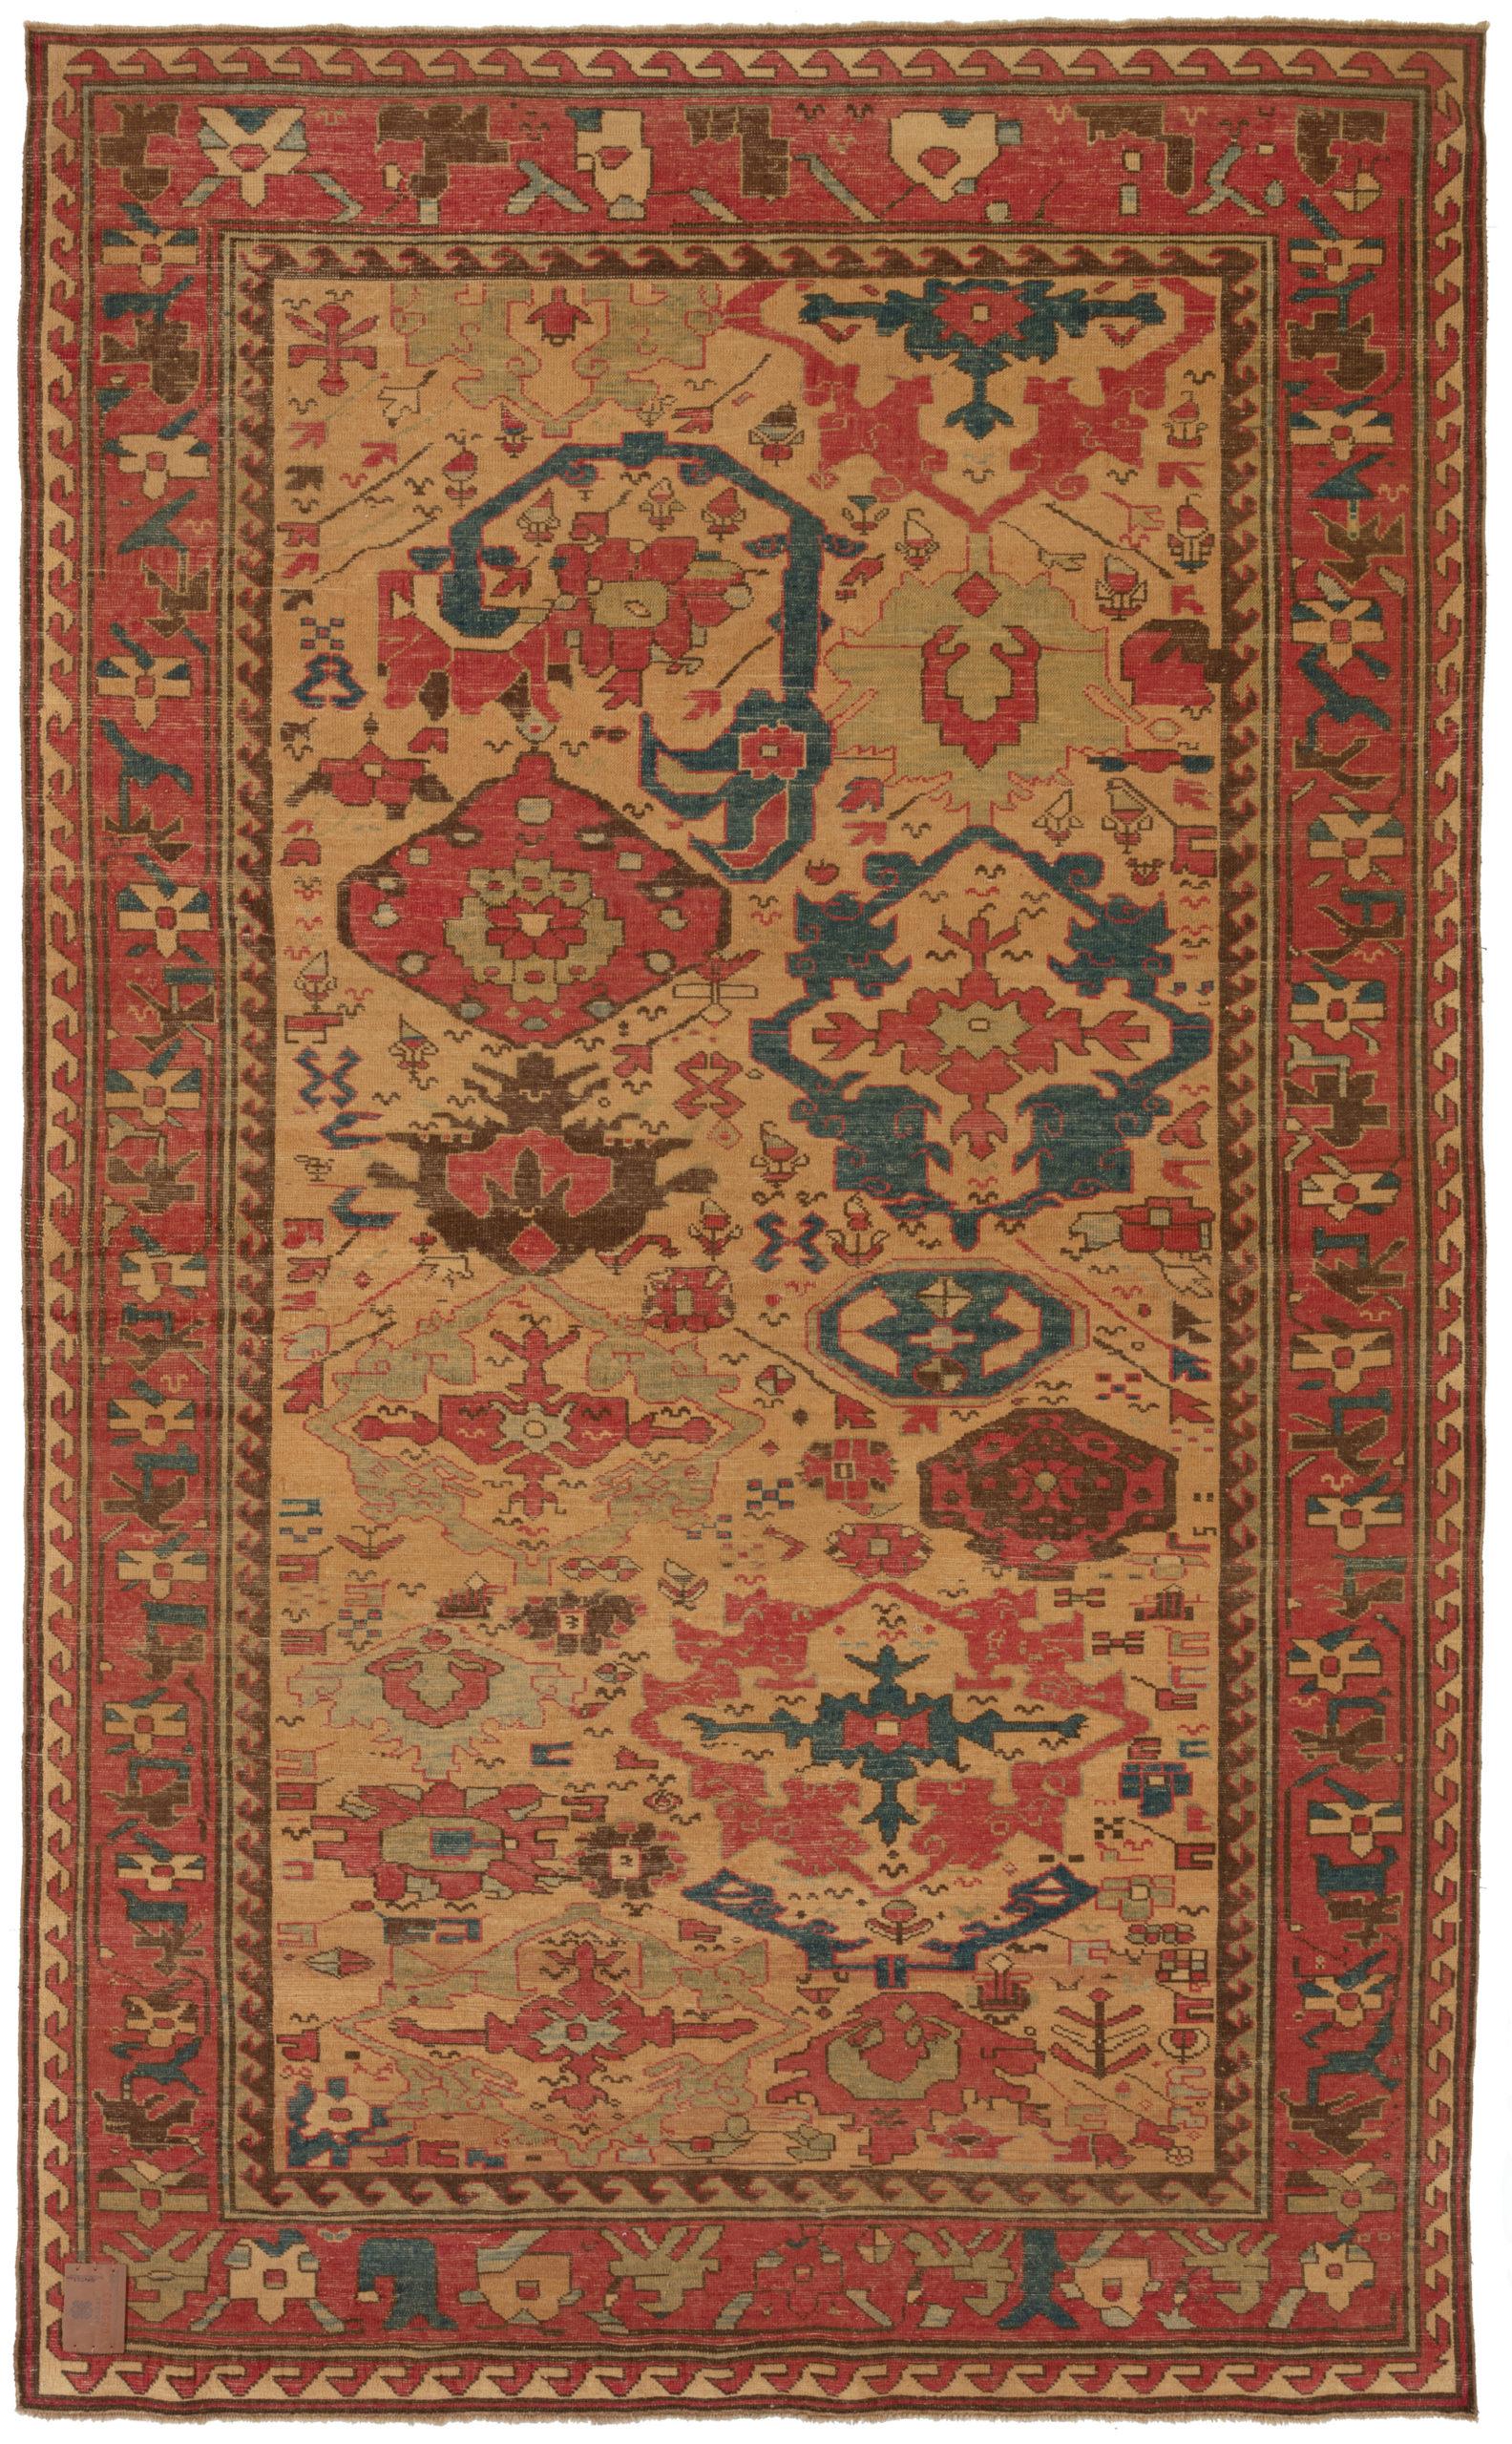 Die Designquelle des Teppichs stammt aus dem Buch Orient Star - A Carpet Collection, E. Heinrich Kirchheim, Hali Publications Ltd, 1993 nr.28. Dies ist ein Teppich mit Harshang-Muster und Palmetten aus dem frühen 19. Jahrhundert, Region